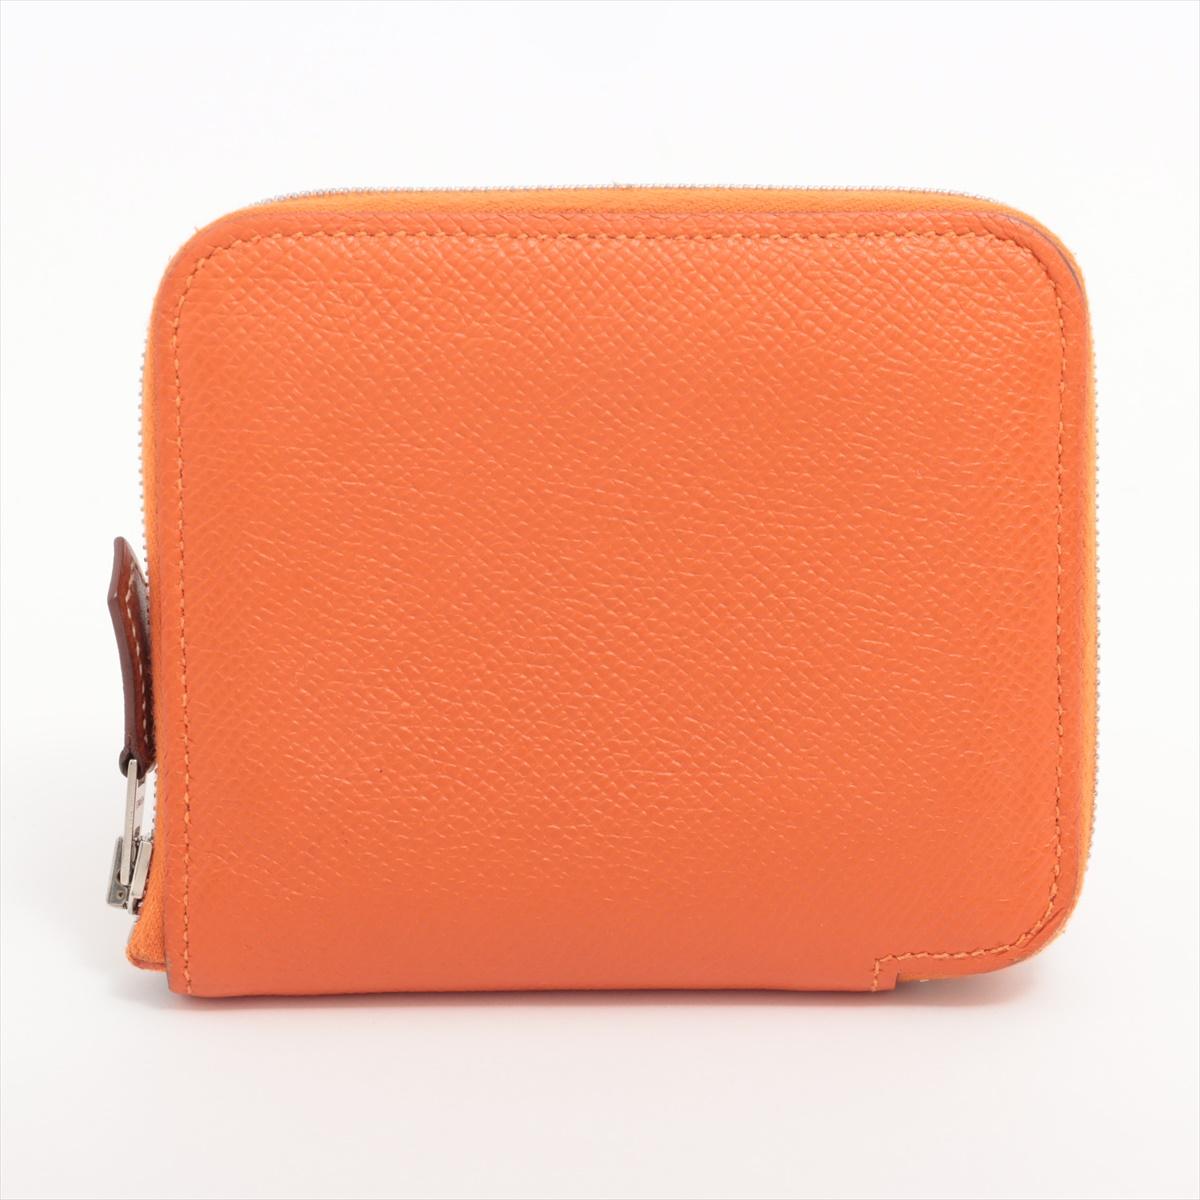 Le porte-monnaie compact à fermeture éclair Hermès en orange est un accessoire compact et vibrant qui allie sans effort le luxe et le design pratique. Fabriqué méticuleusement en cuir lisse. La teinte orange audacieuse ajoute une touche d'éclat à la